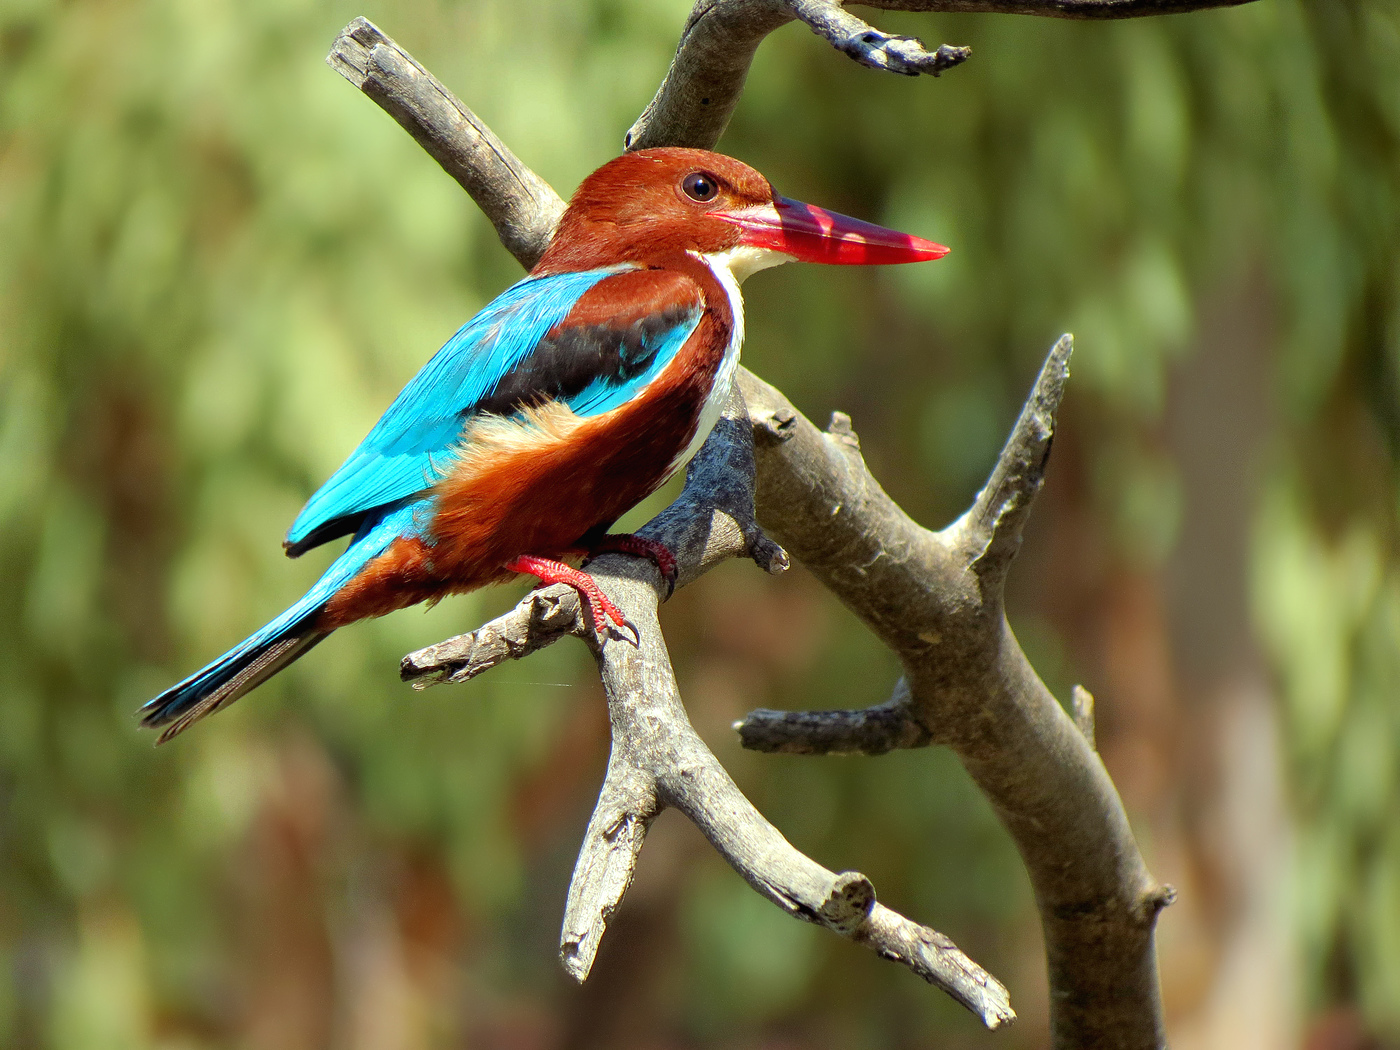 Red-facturat Alcyone, sau Kingfisher cu fața înfrunzită, sau White-breasted Kingfisher